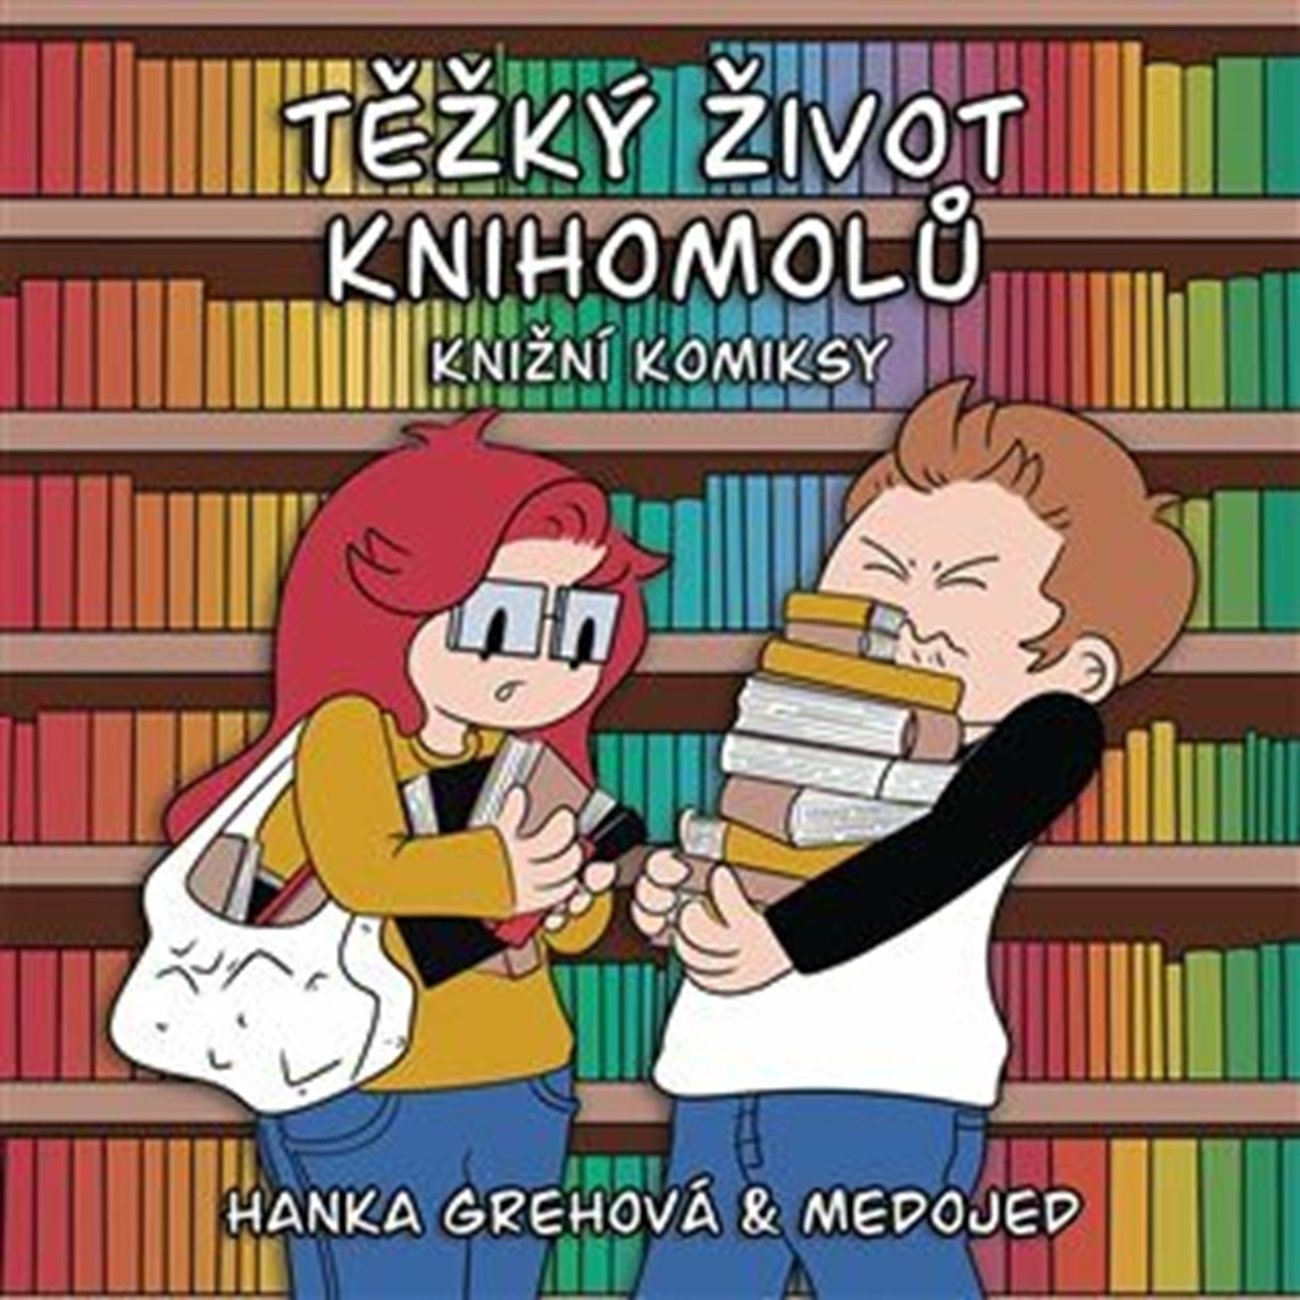 Levně Těžký život knihomolů: Knižní komiksy - Hana Grehová